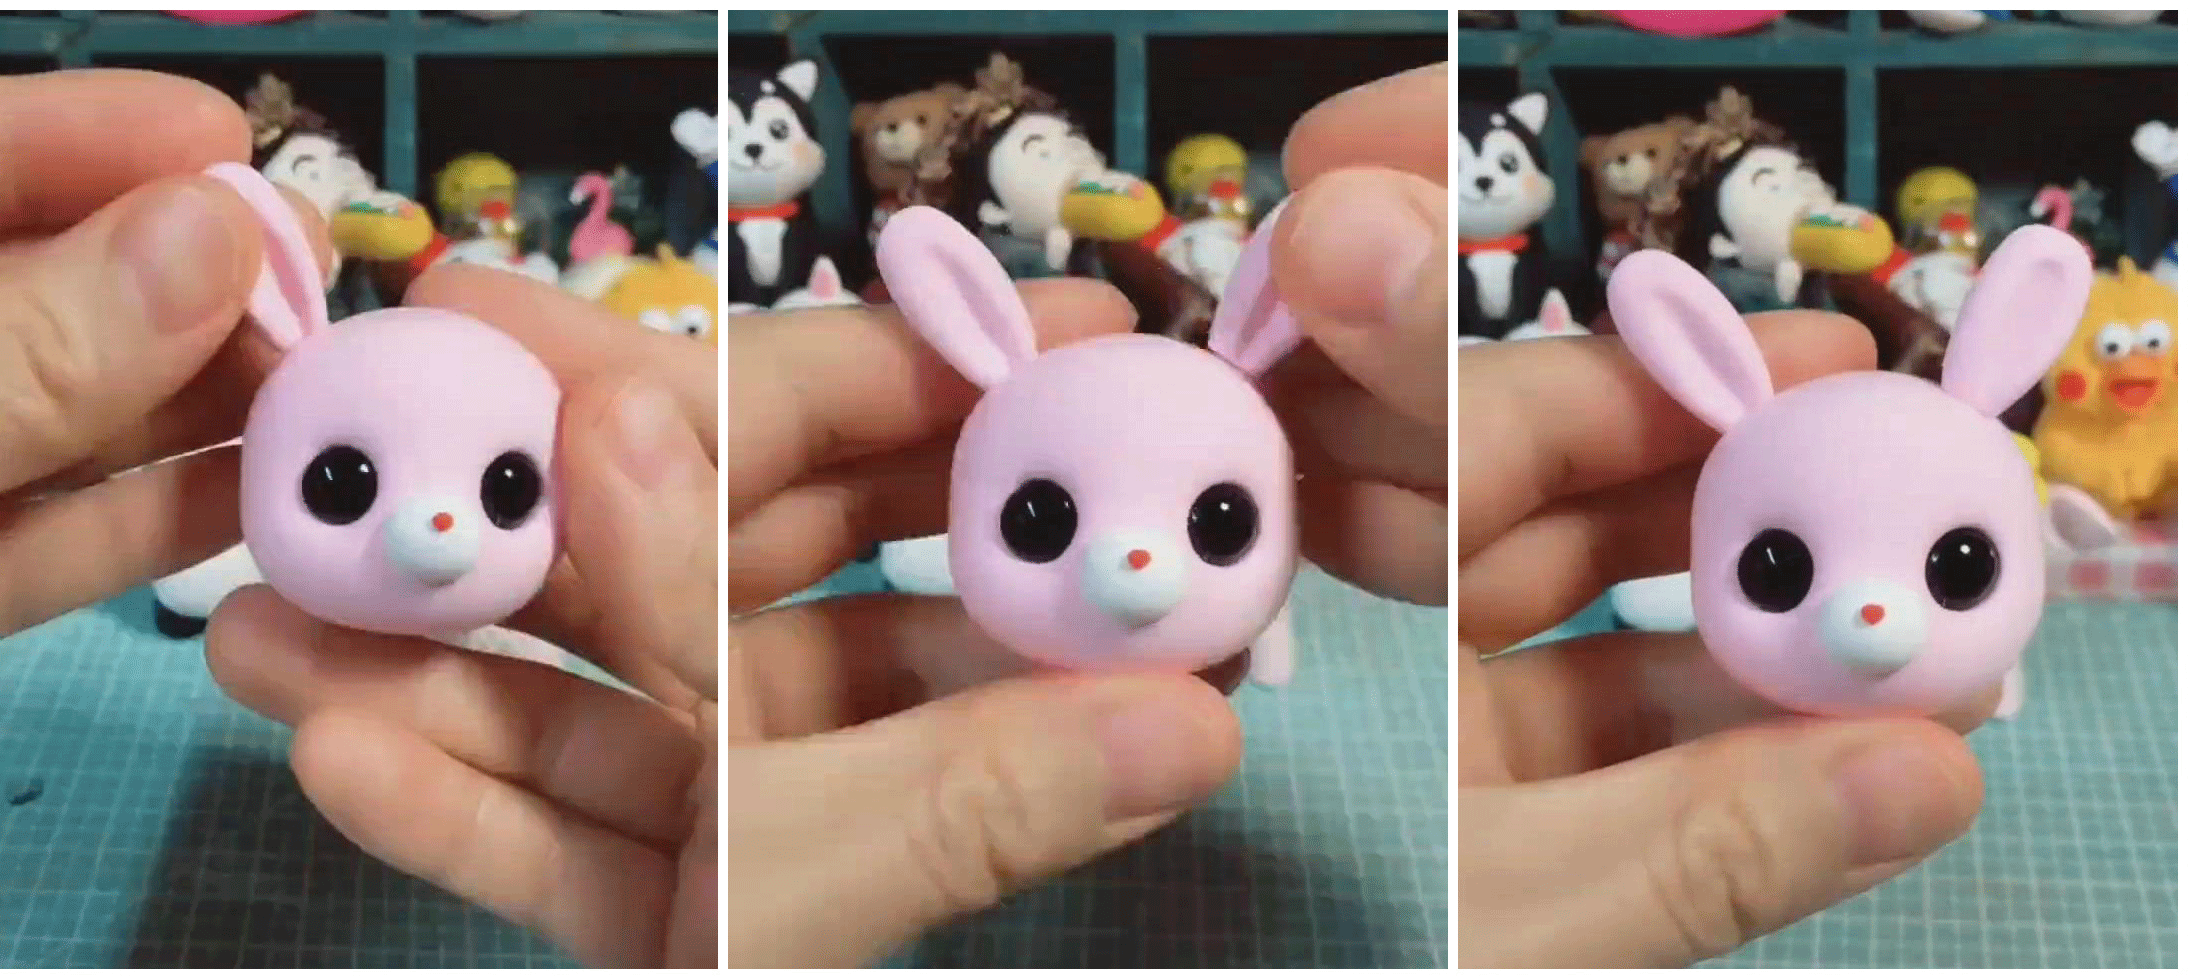 粘土可爱粉色小胖兔子的手工制作步骤